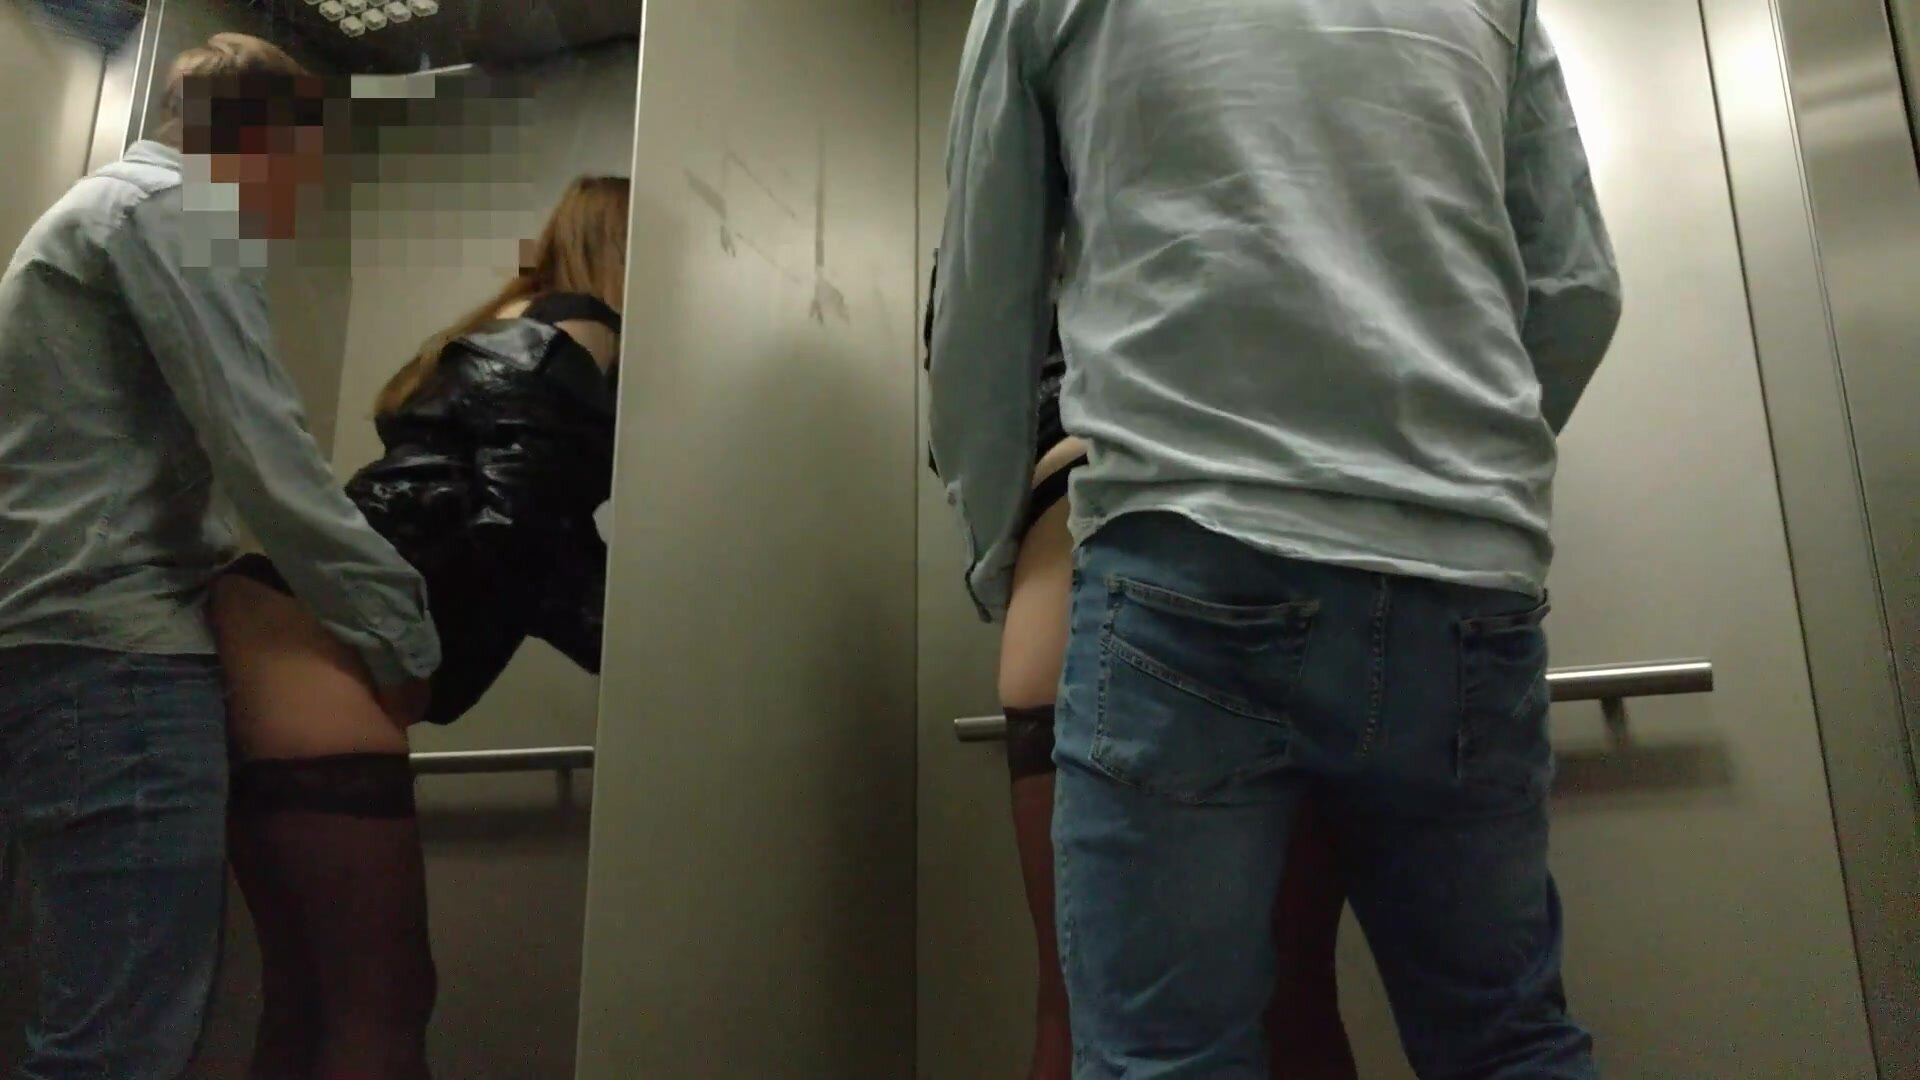 Un couple de voyeurs fait du sexe en public à risque dans un ascenseur image